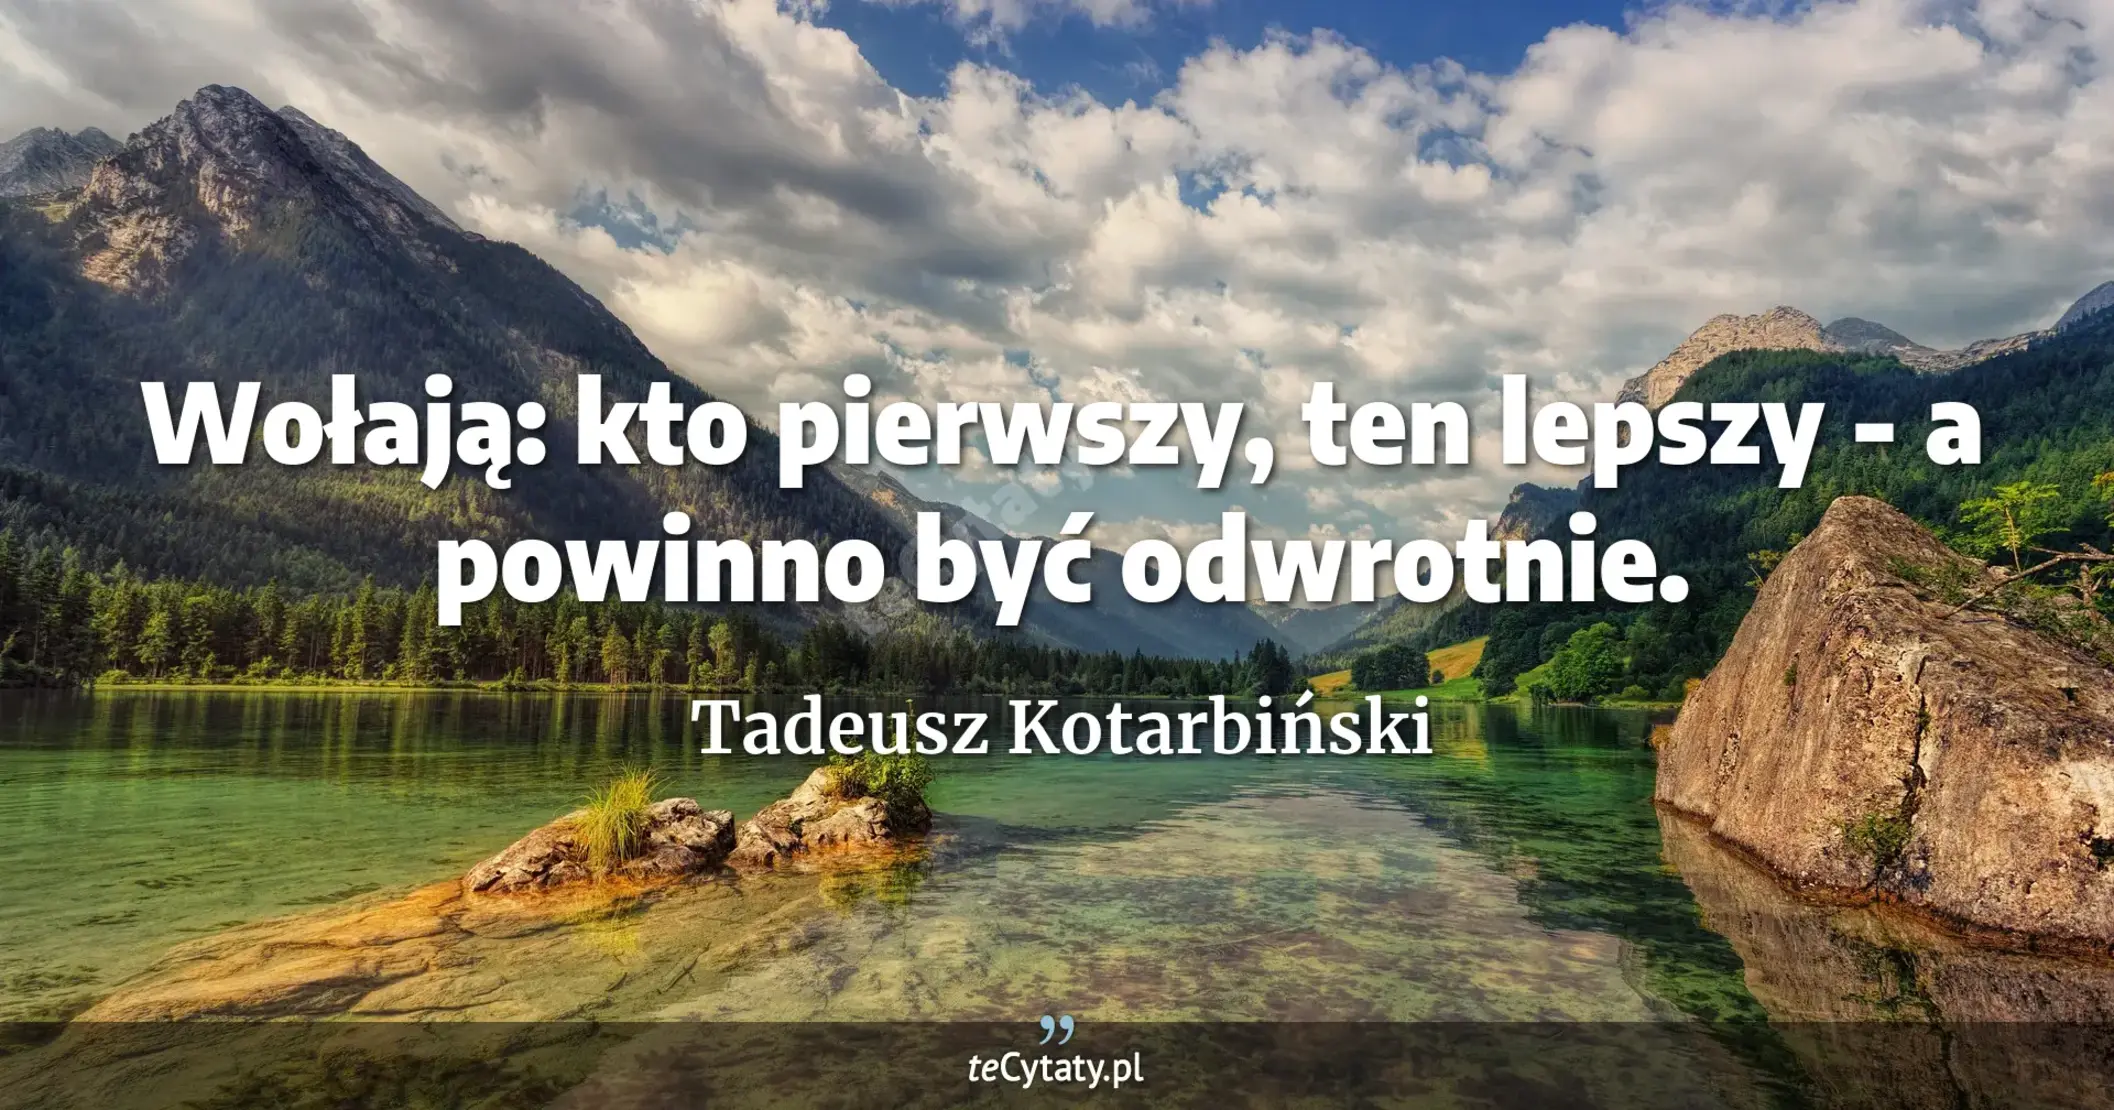 Wołają: kto pierwszy, ten lepszy - a powinno być odwrotnie. - Tadeusz Kotarbiński